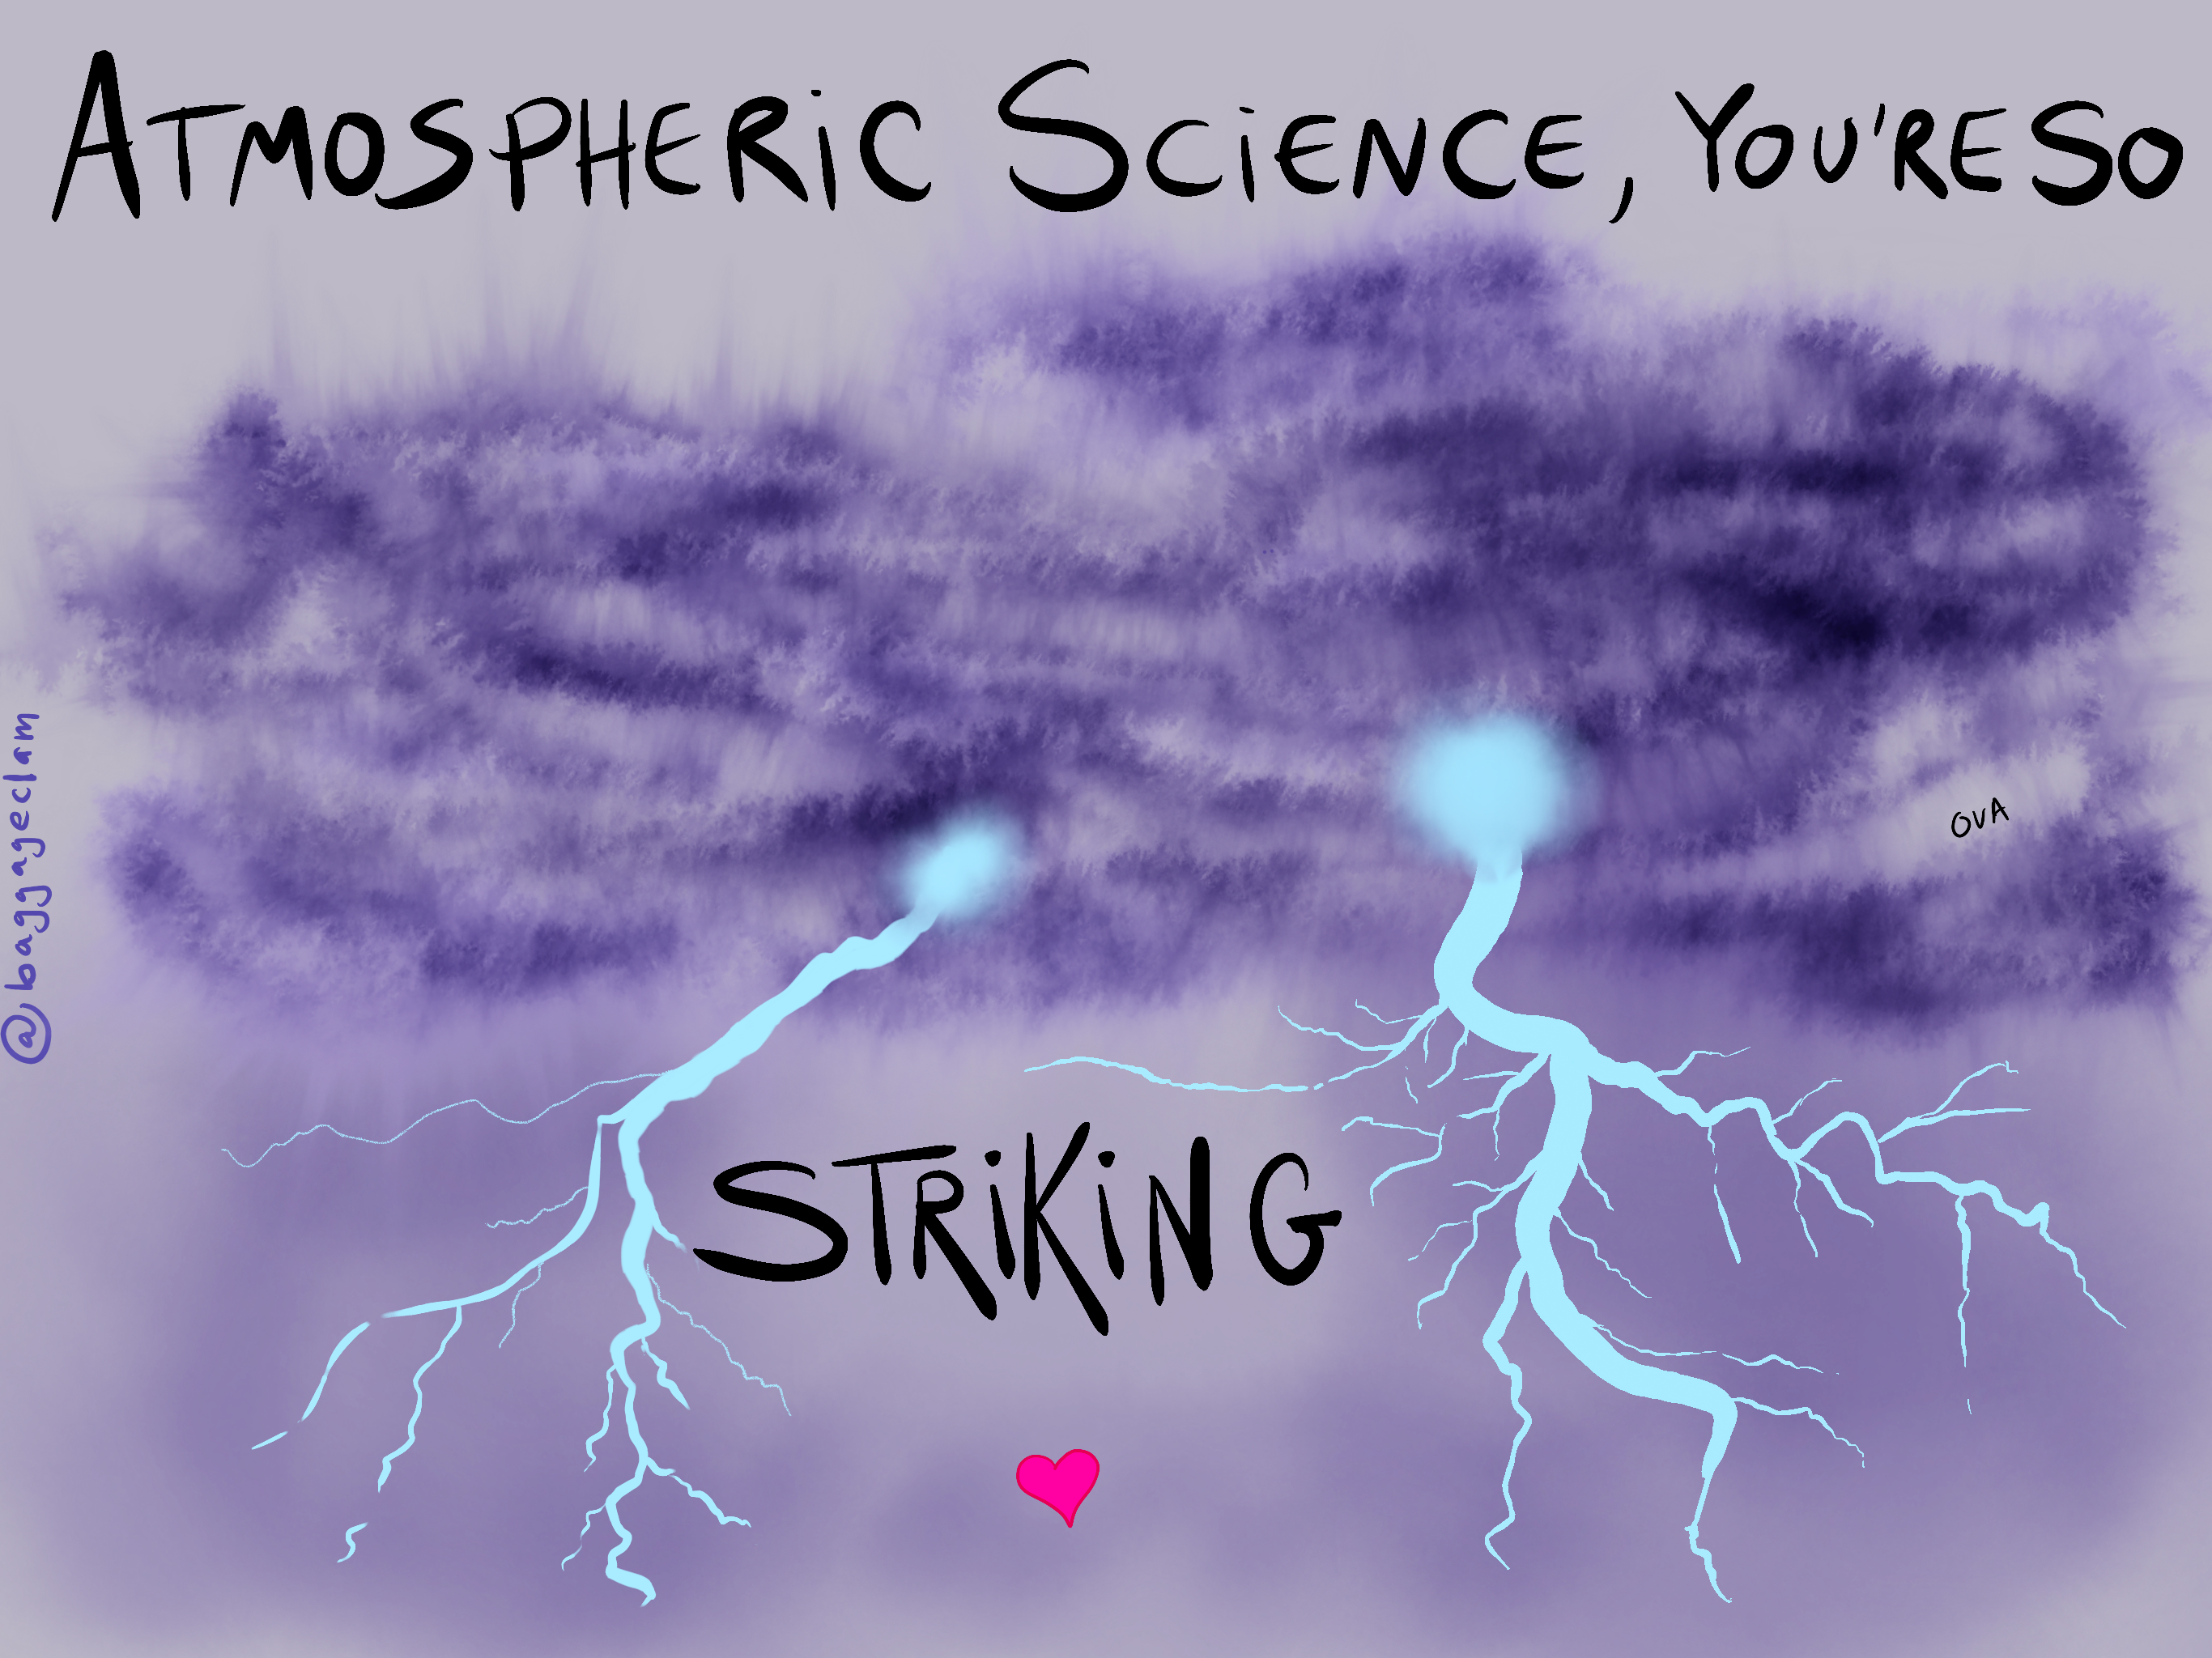 Atmosphere - Striking